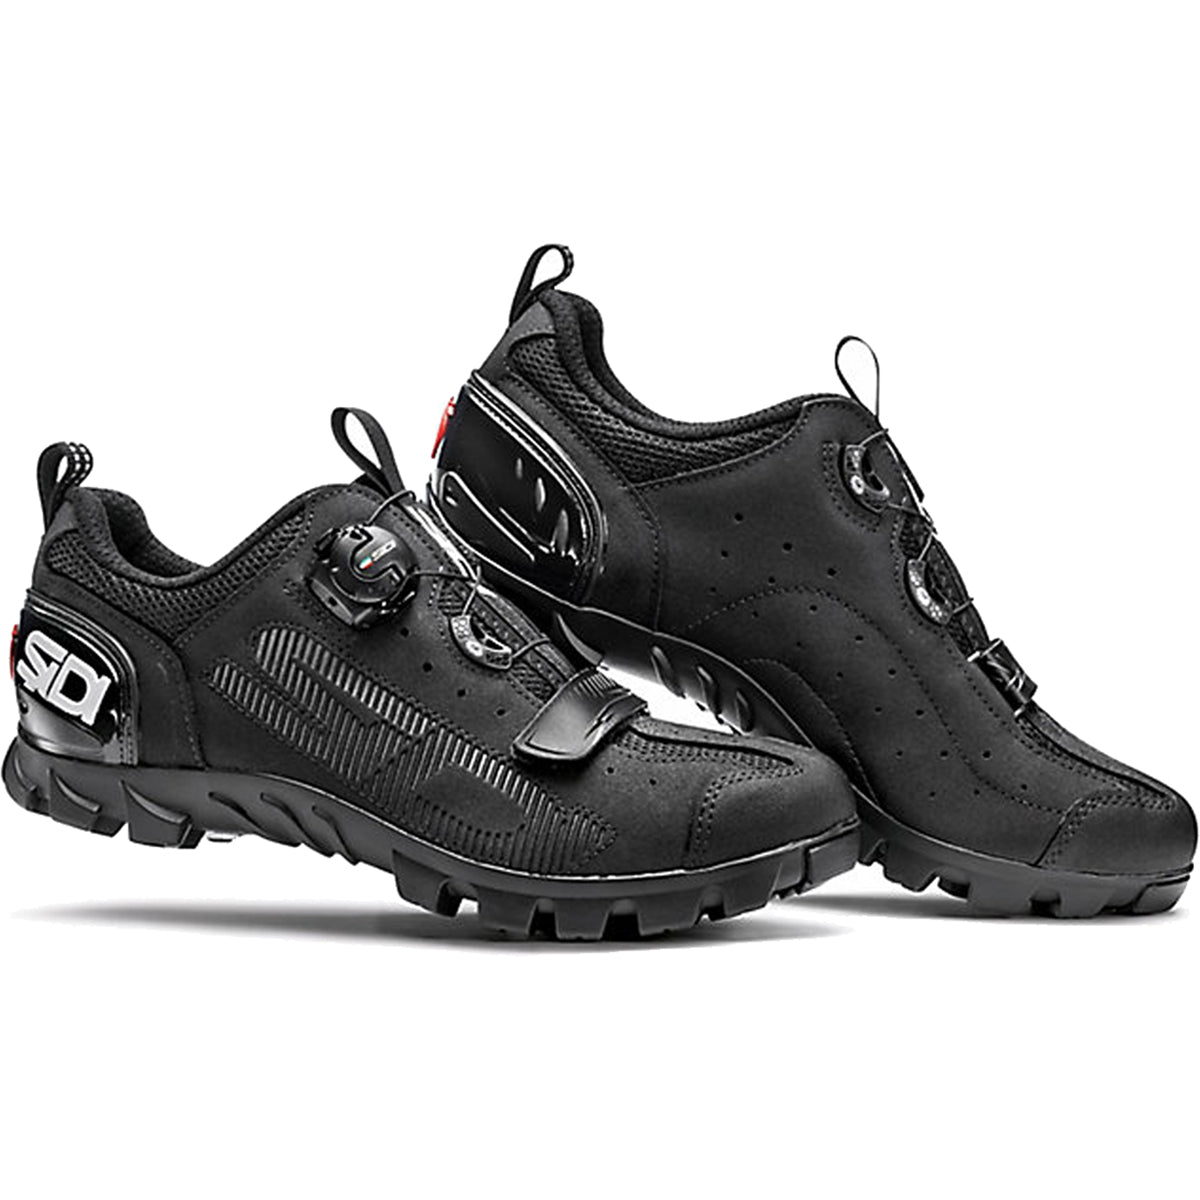 Sidi SD15 Mountain Bike Shoes CLOSEOUT - Black